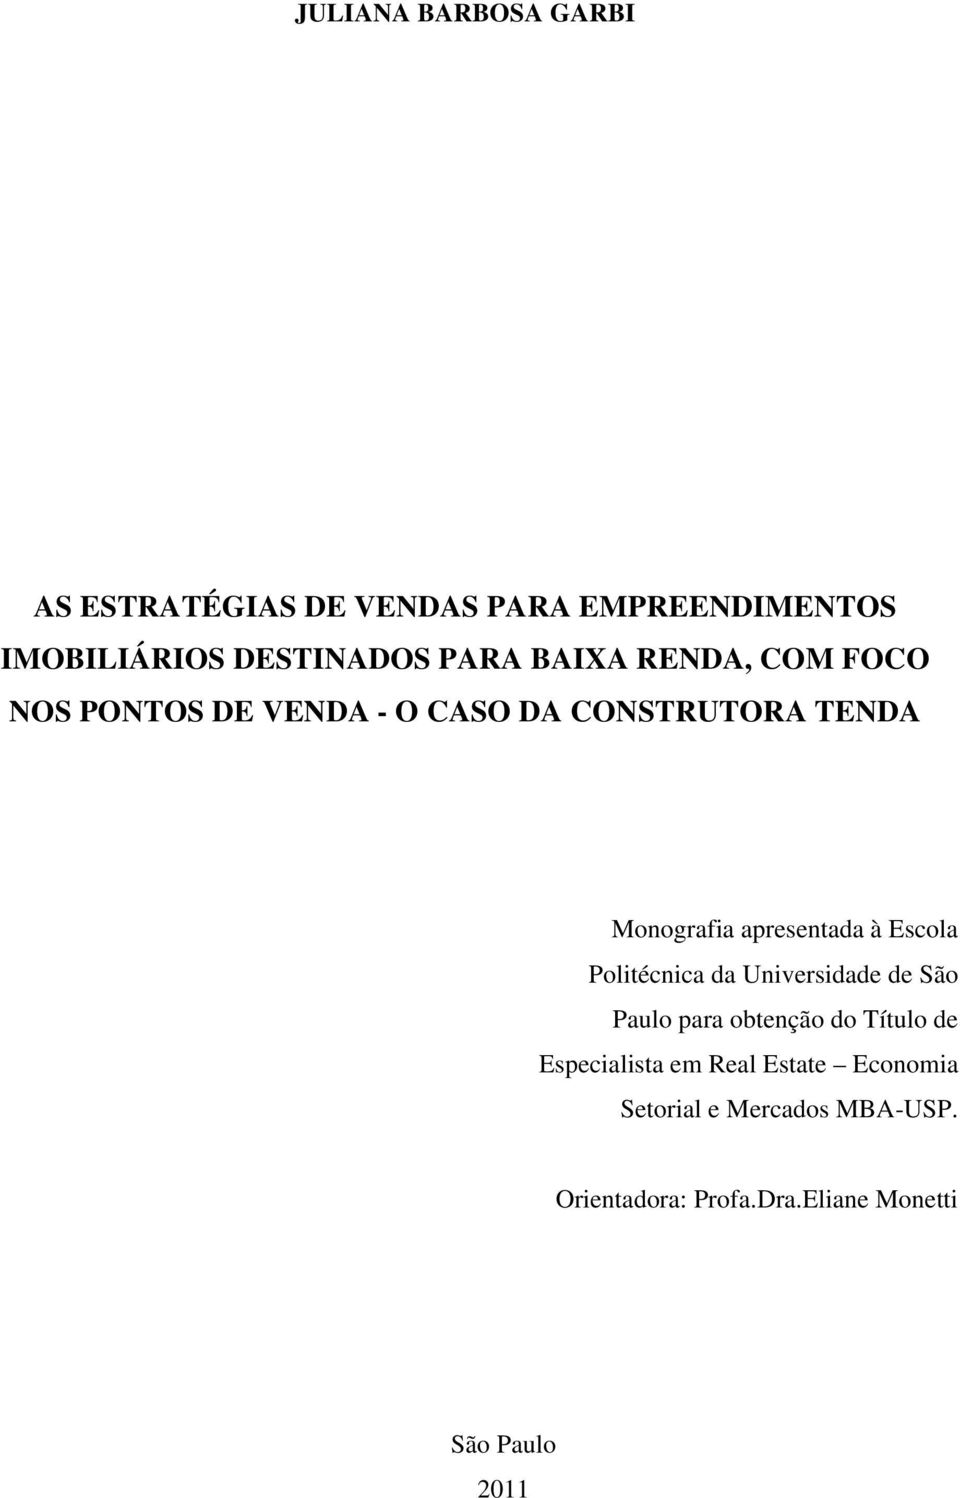 Escola Politécnica da Universidade de São Paulo para obtenção do Título de Especialista em Real